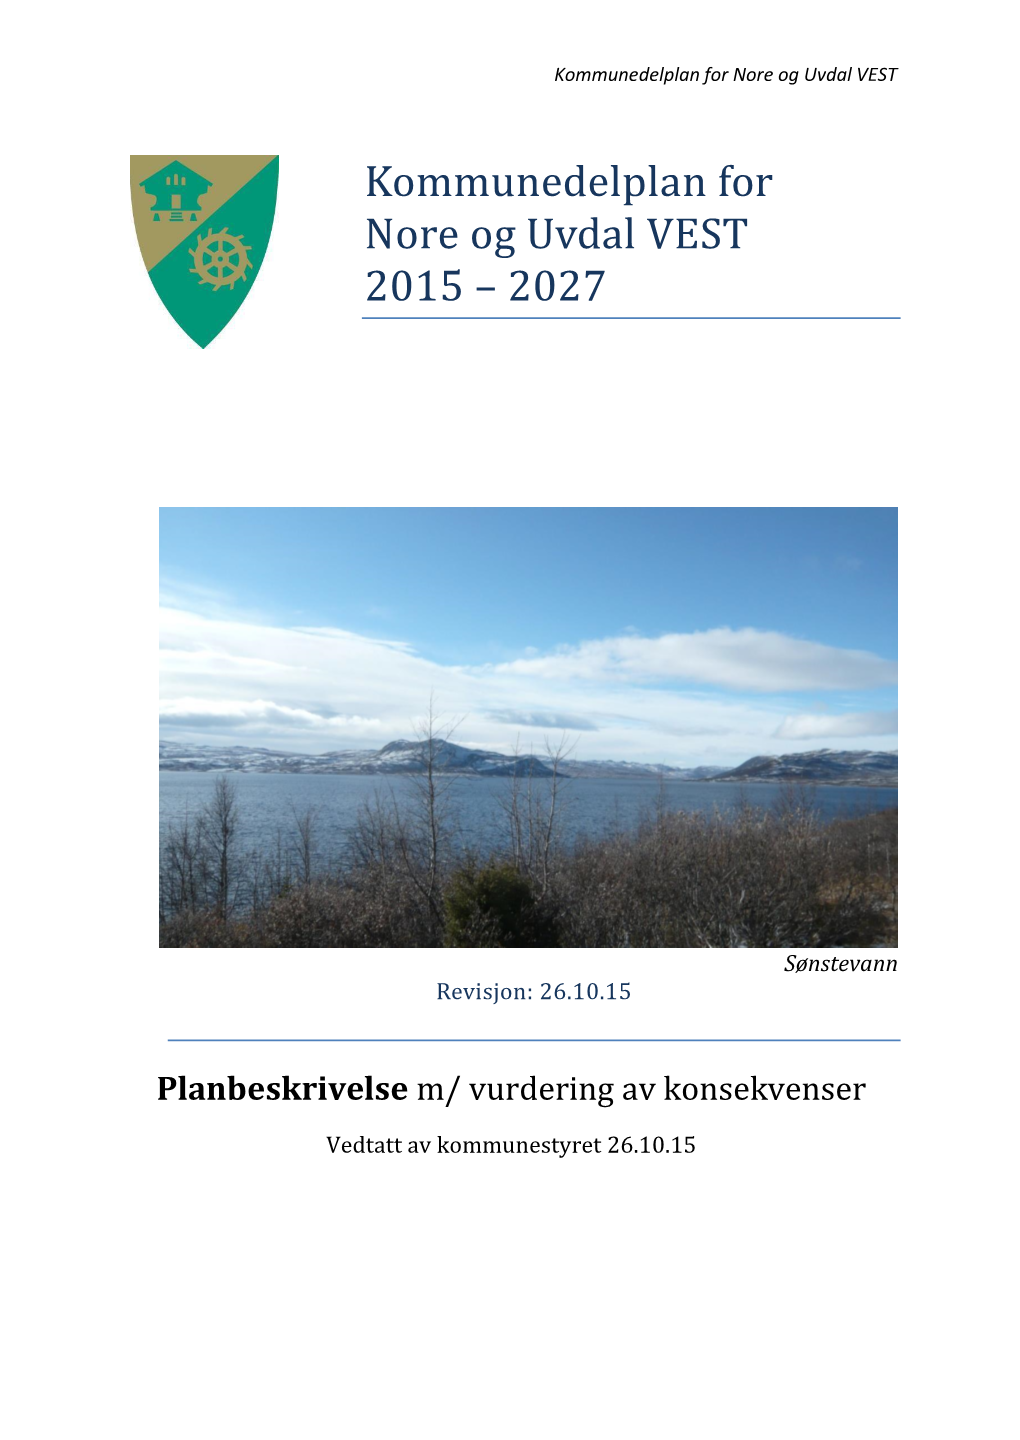 Kommunedelplan for Nore Og Uvdal VEST 2015 – 2027